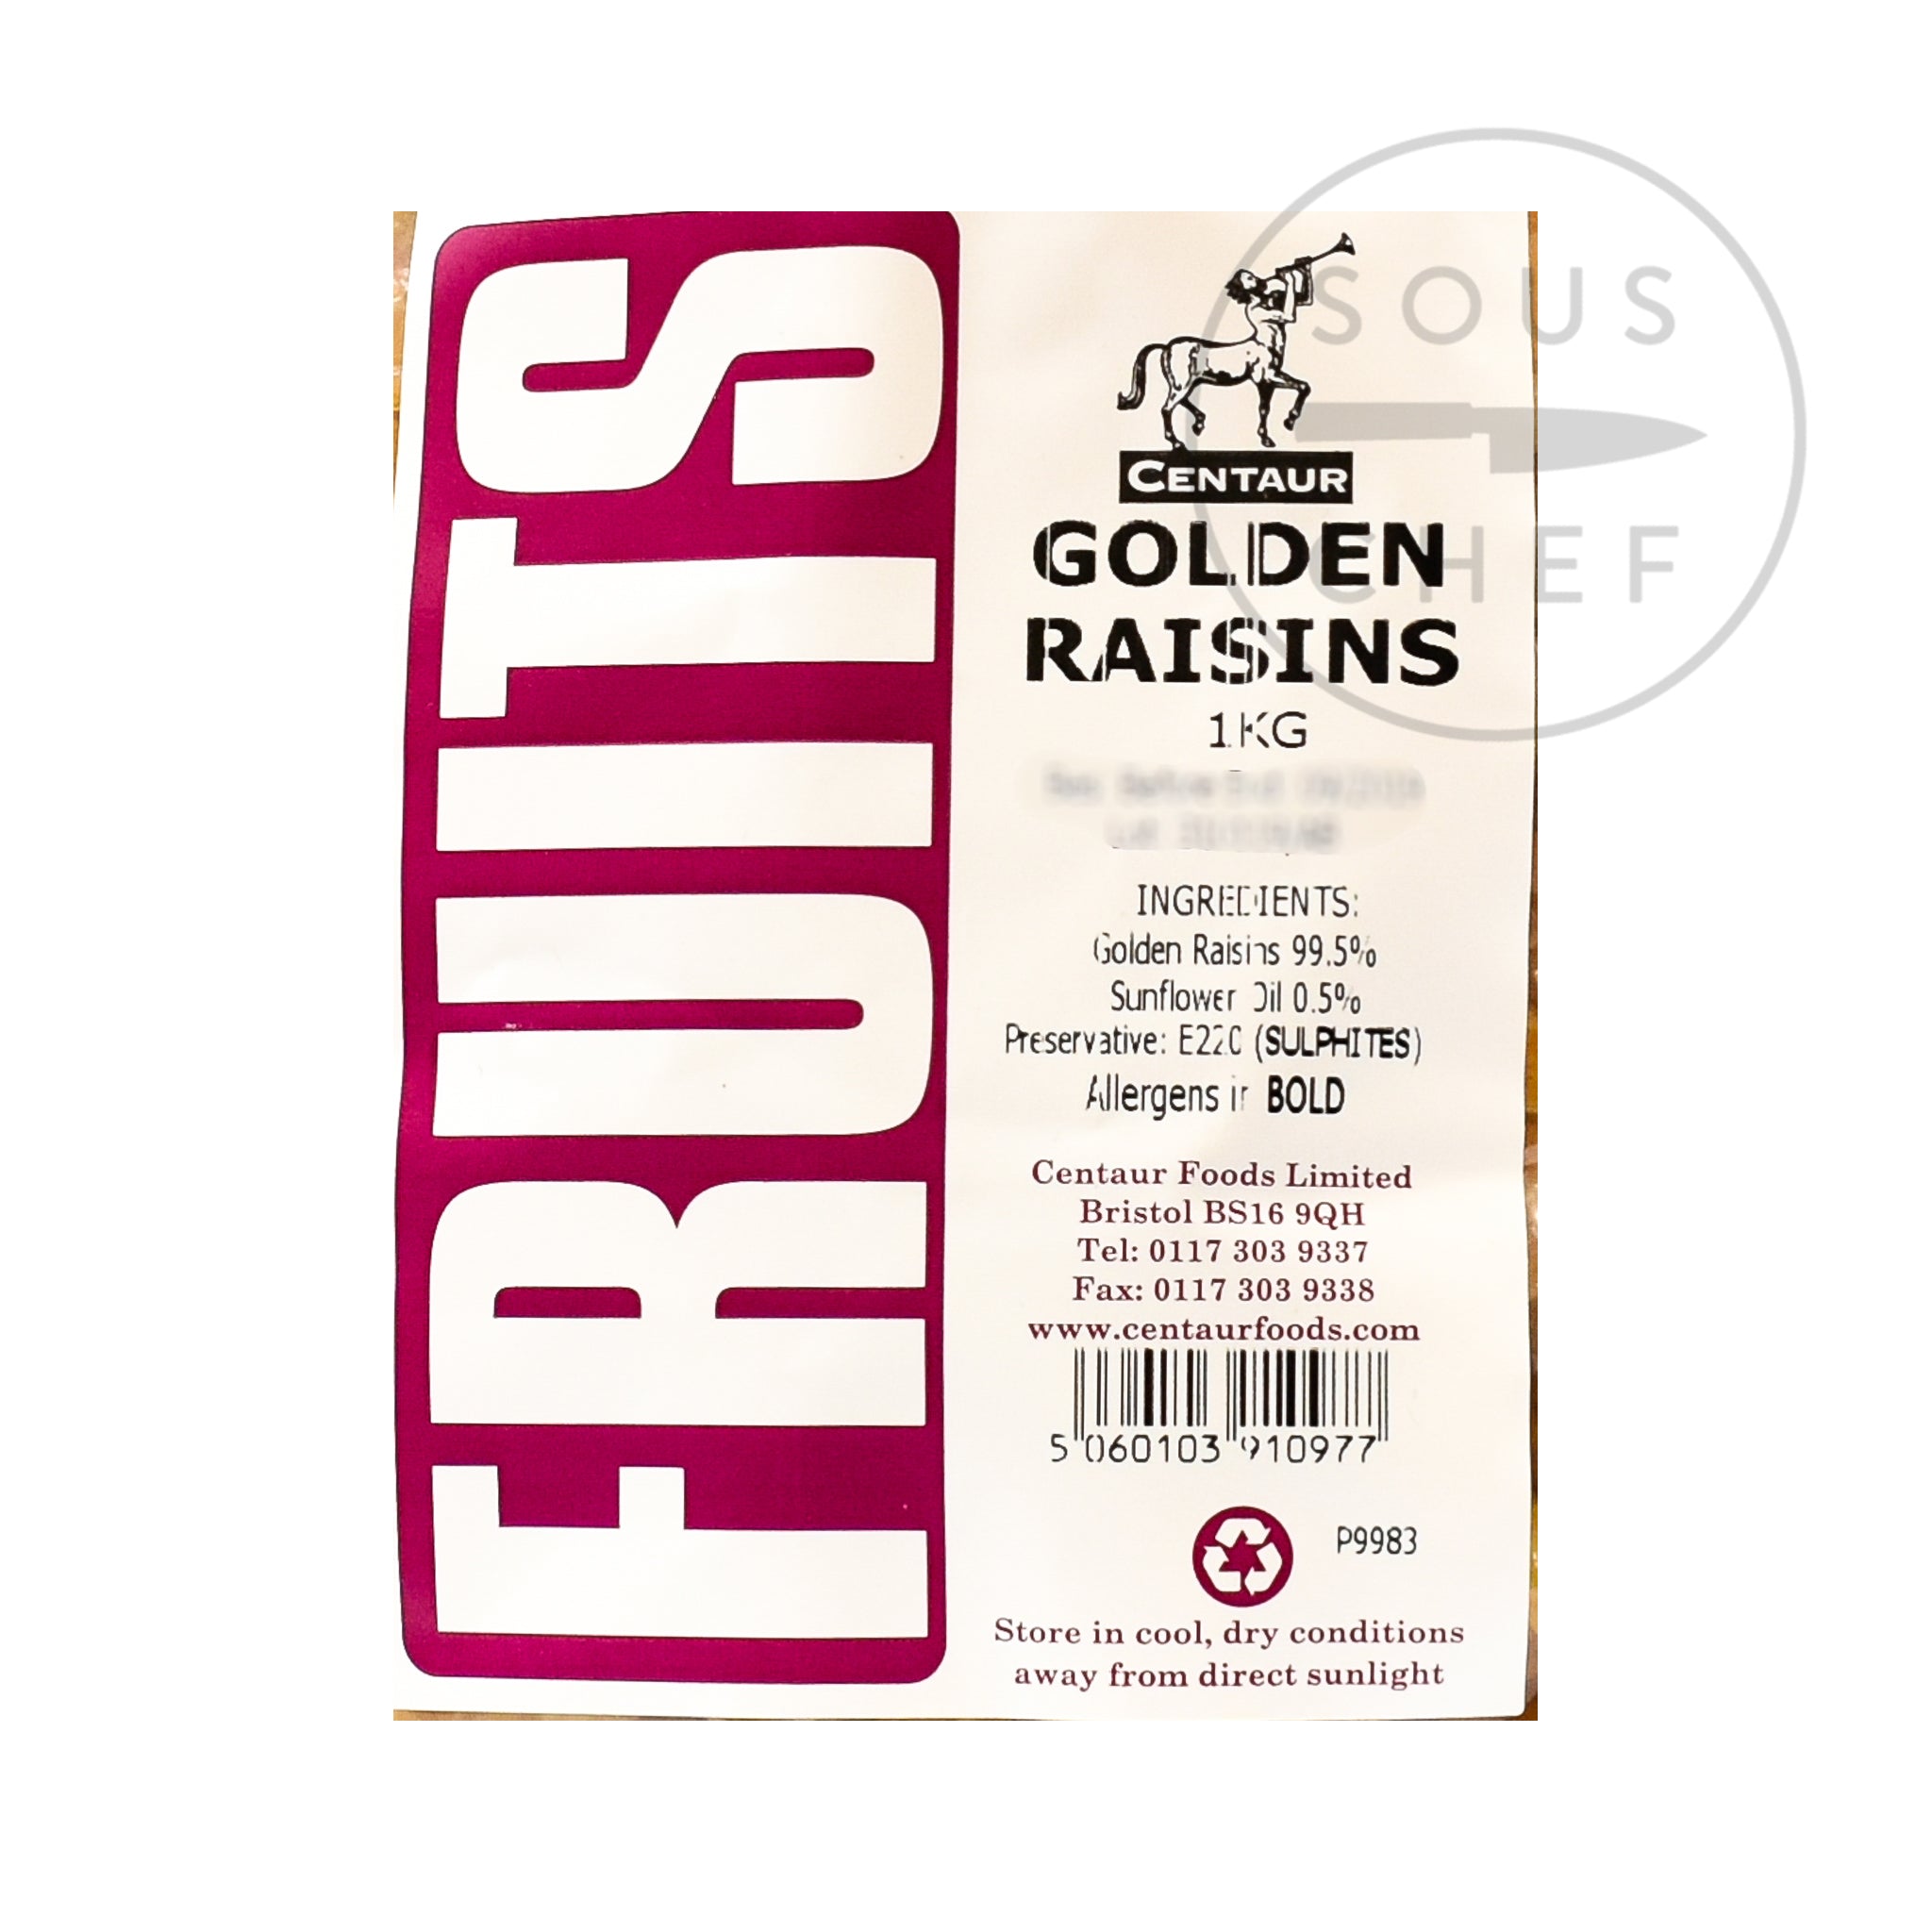 Golden Raisins 1kg ingredients